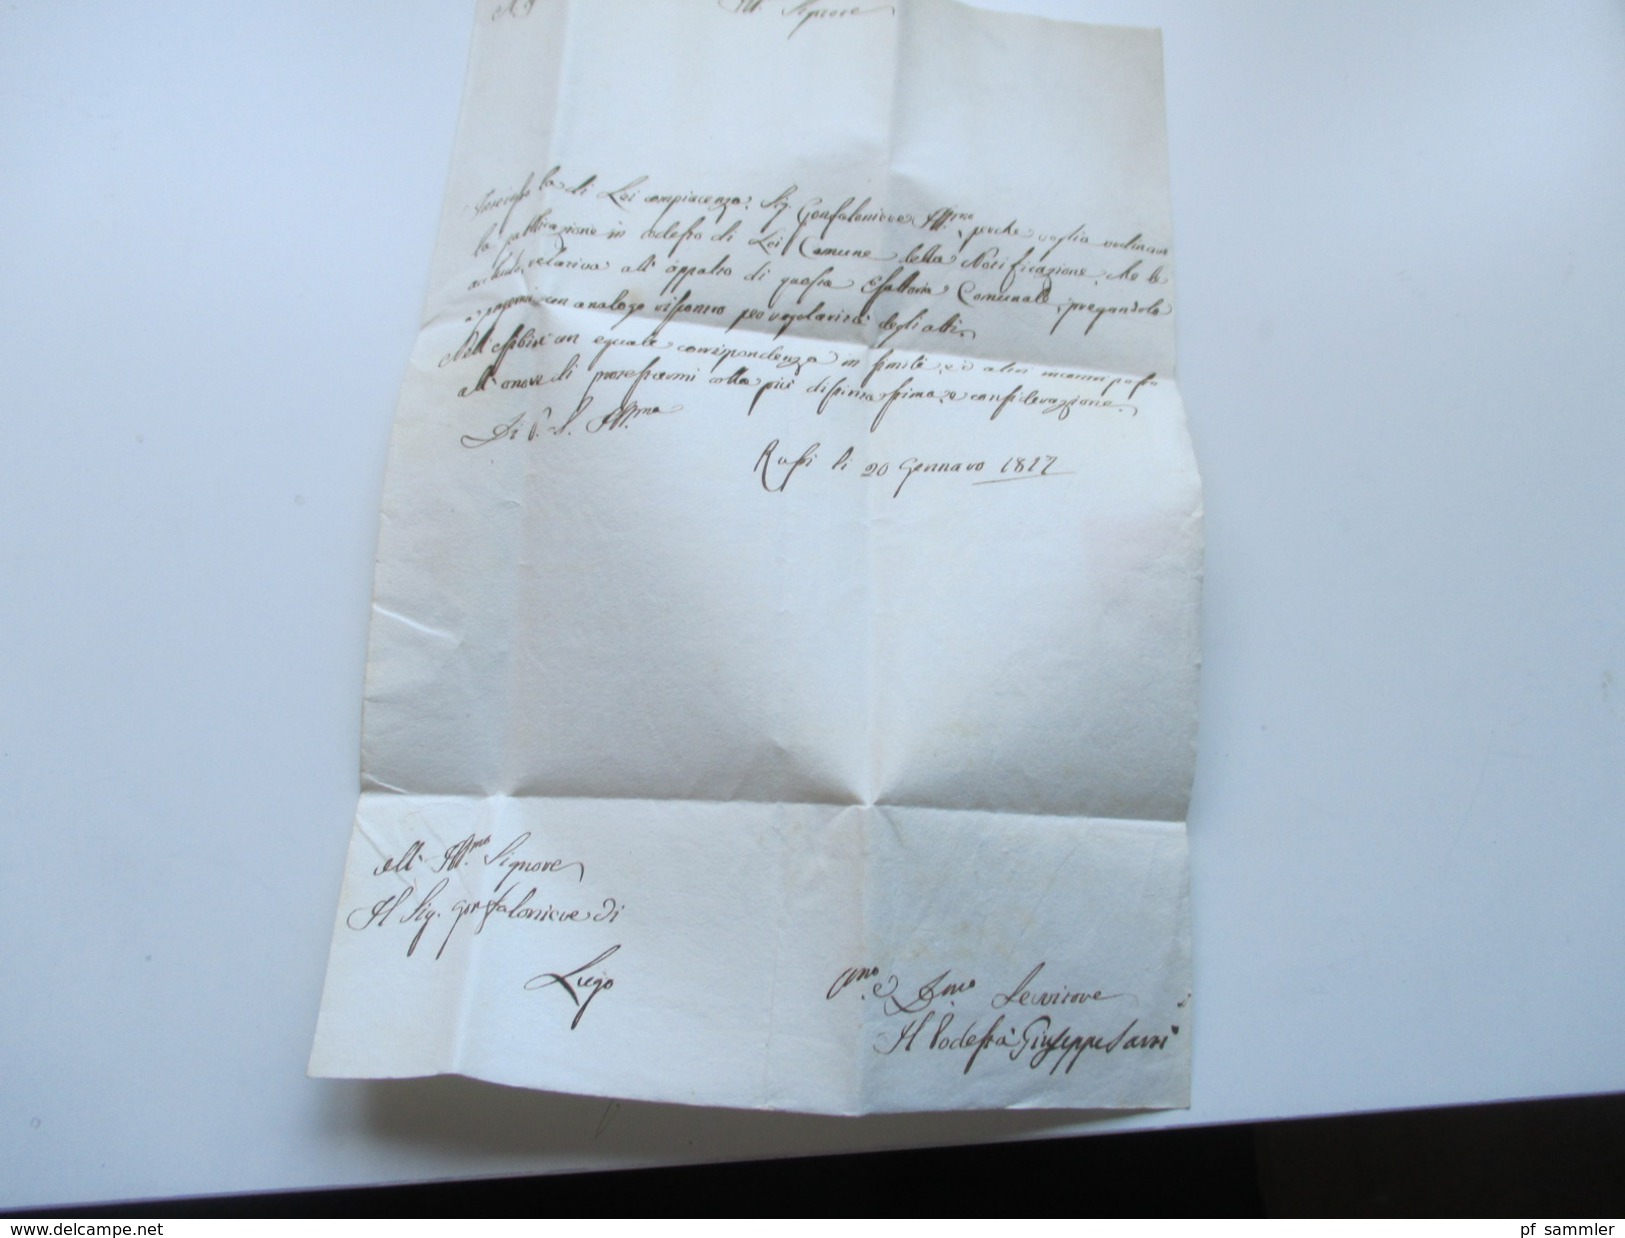 Italien Vorphila 1817 Brief nach Lugo. Interessanter Inhalt?! Stempel?? Guter Zustand!